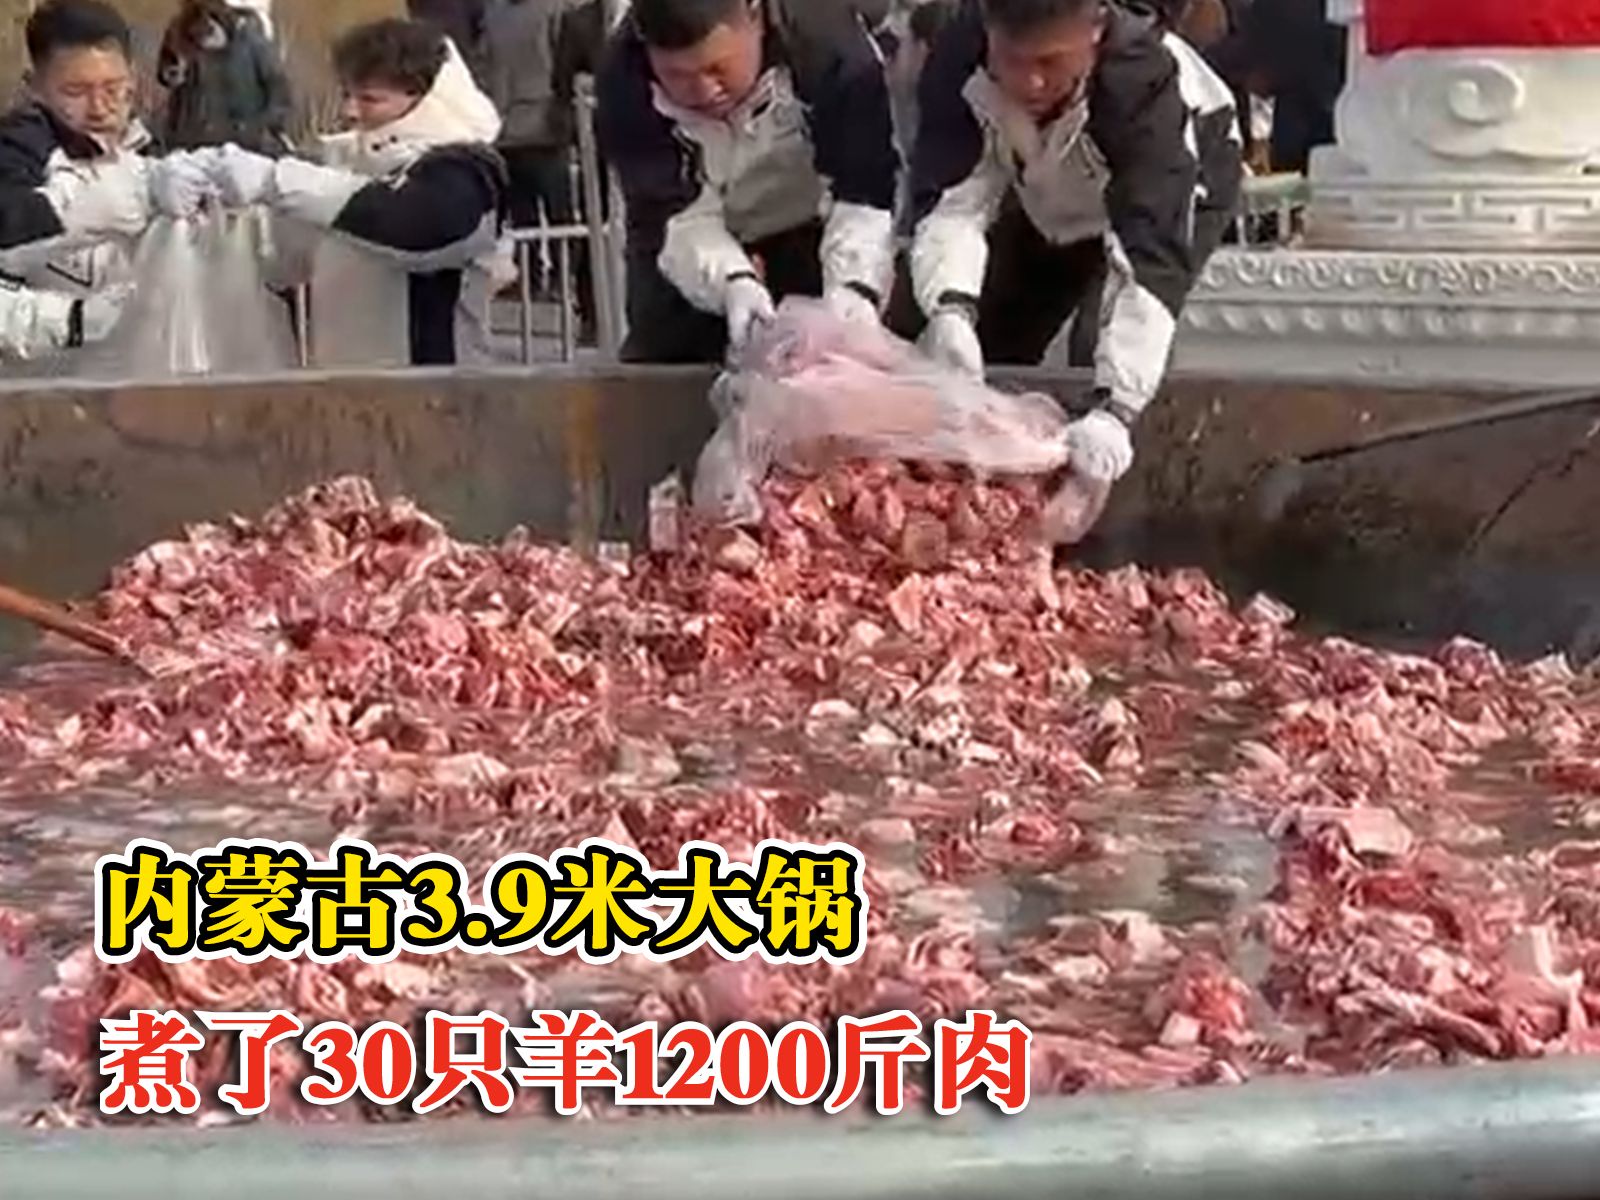 内蒙古3米9大锅冰煮30只羊，围观市民排队等候品尝